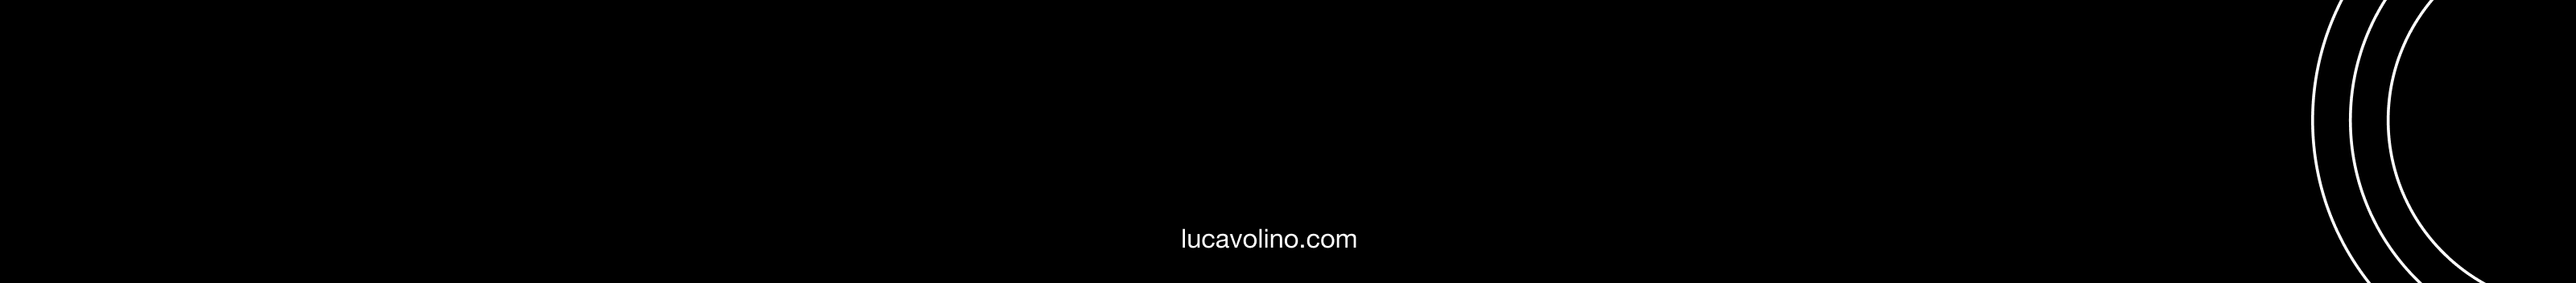 Luca Volino's profile banner